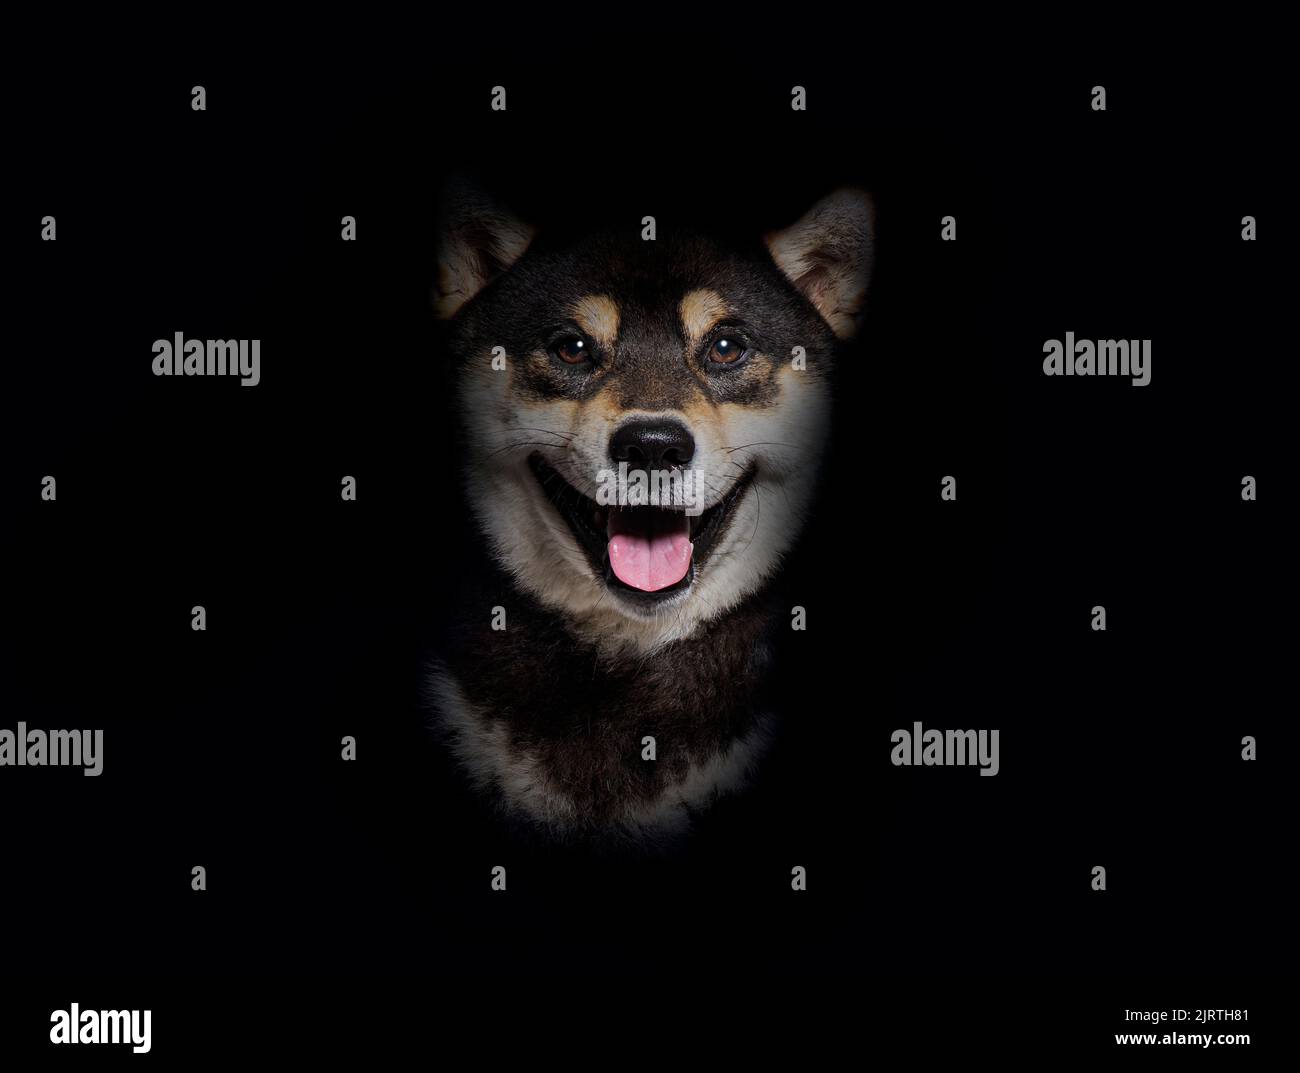 Plano de la cabeza de un perro Shiba inu jadeando y luciendo feliz, sobre un fondo negro Foto de stock